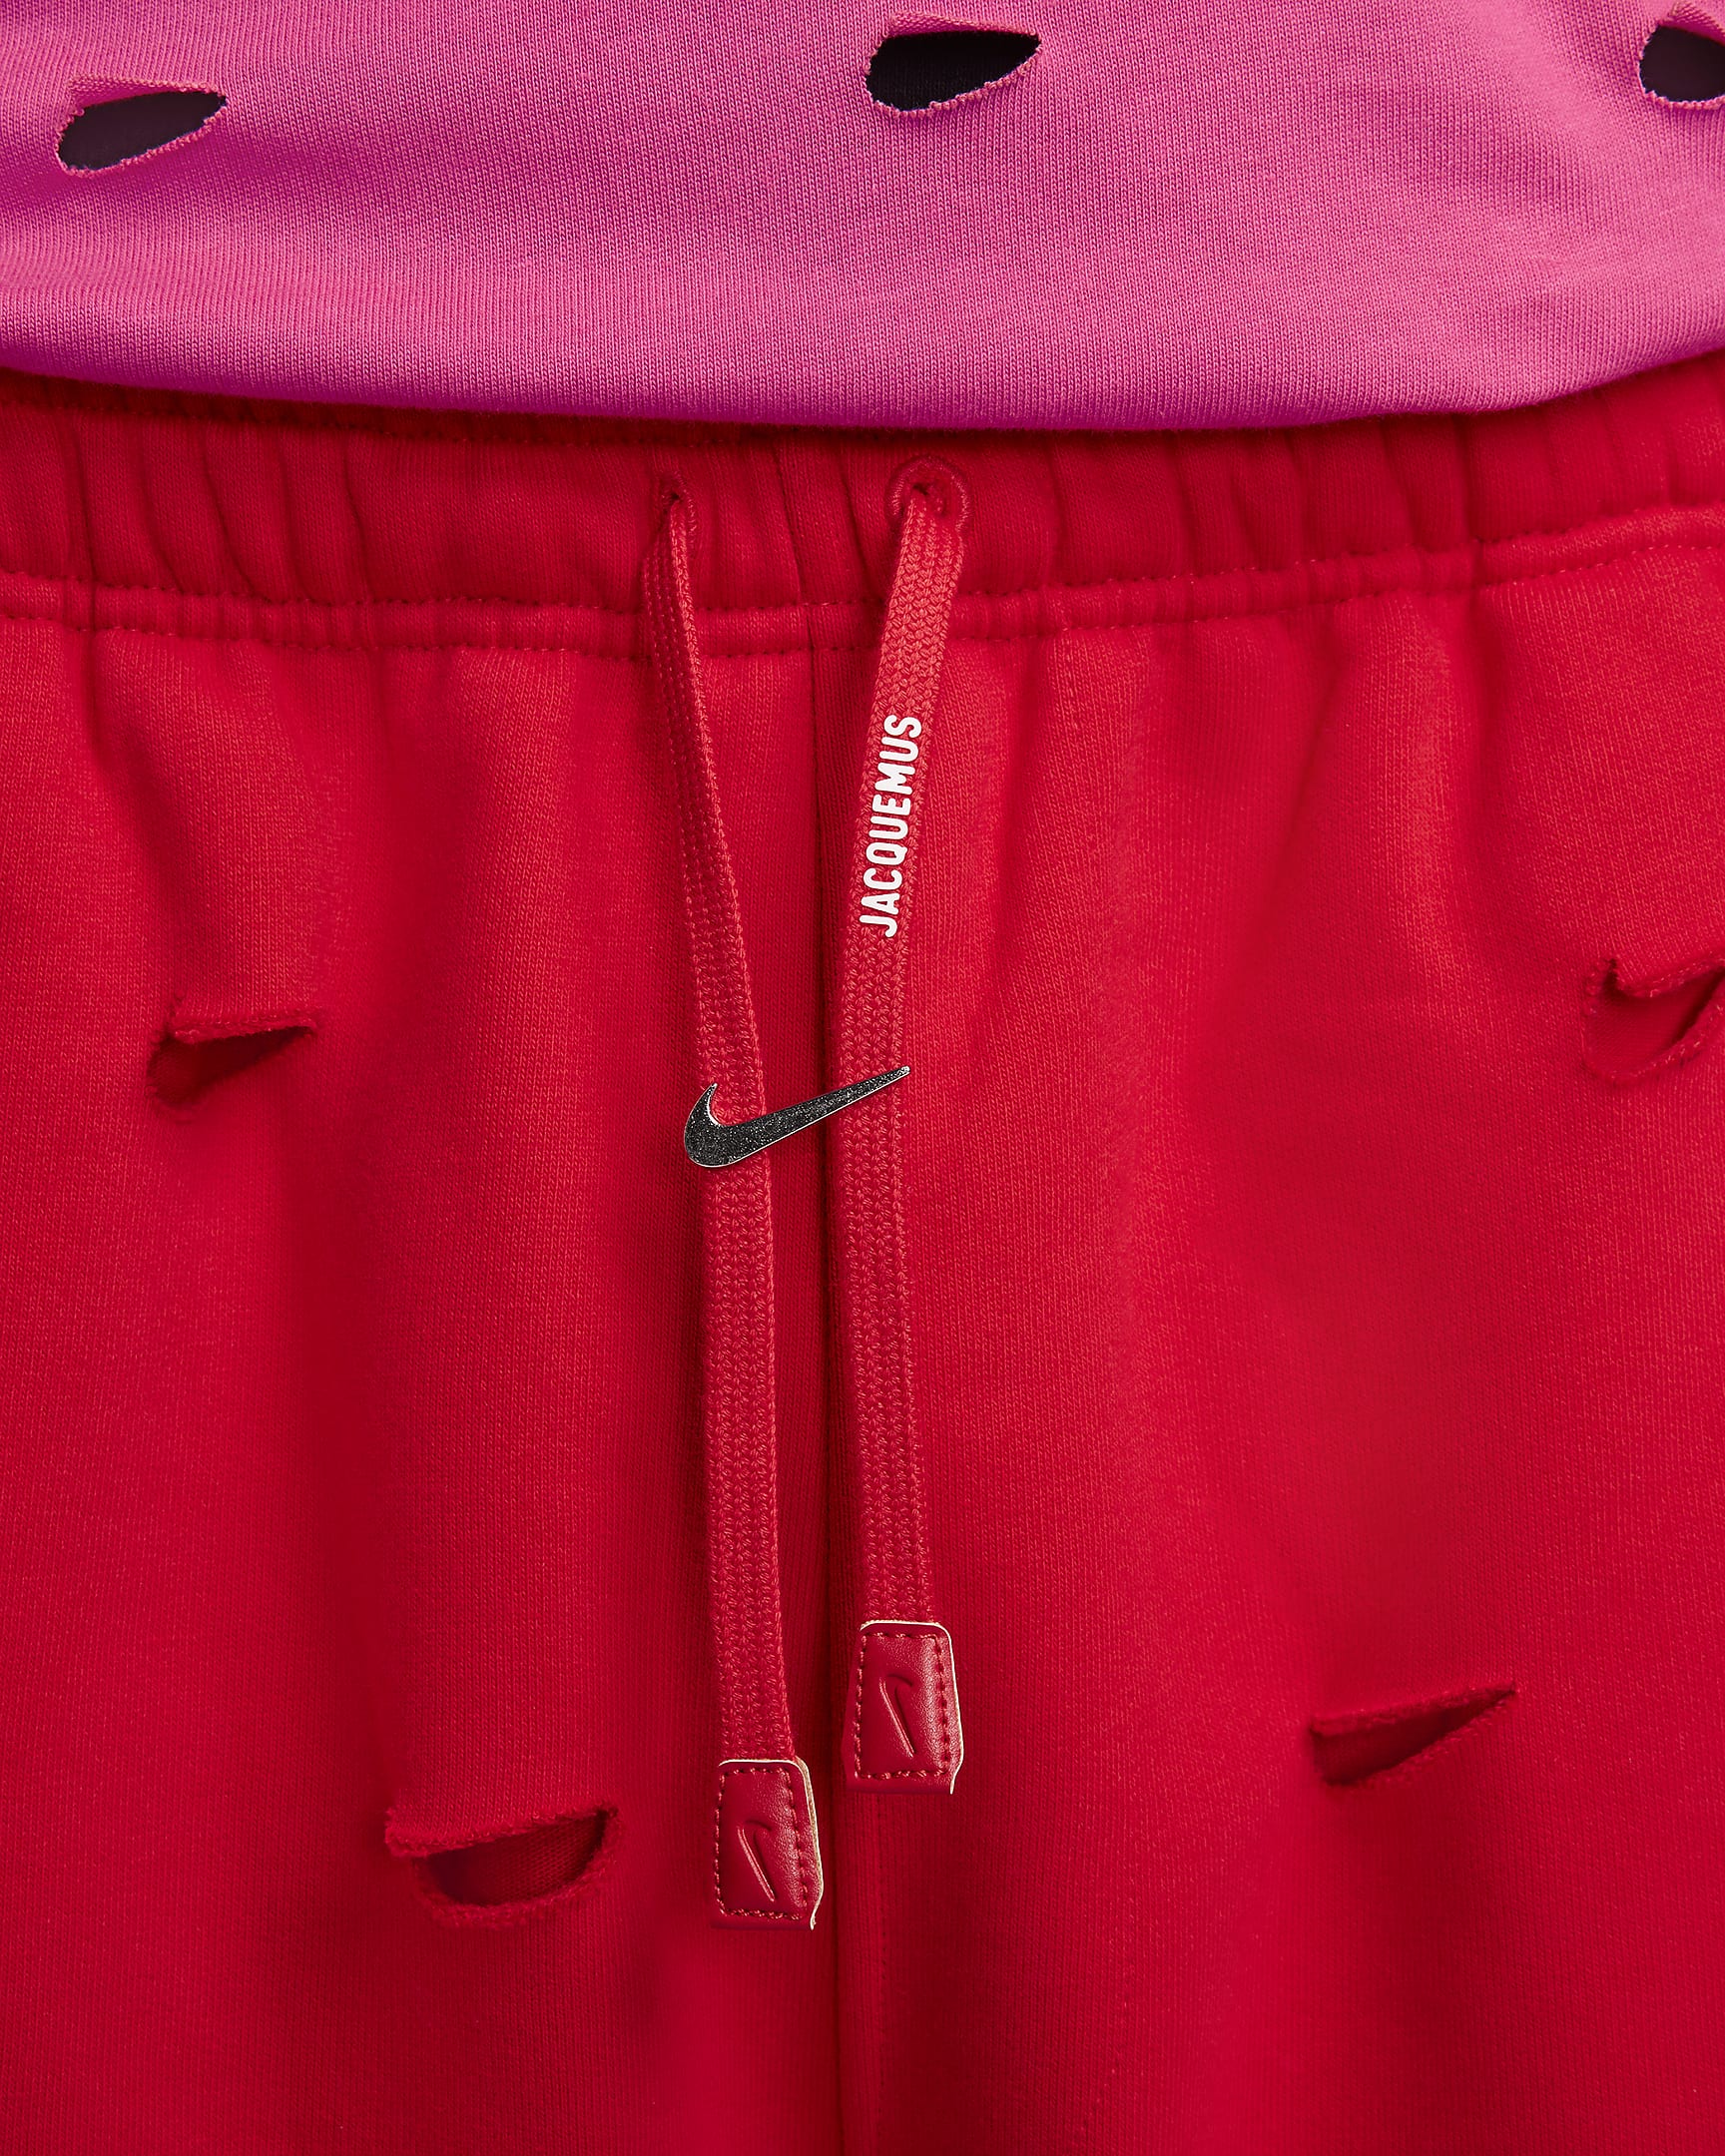 Pantalon Swoosh Nike x Jacquemus - University Red